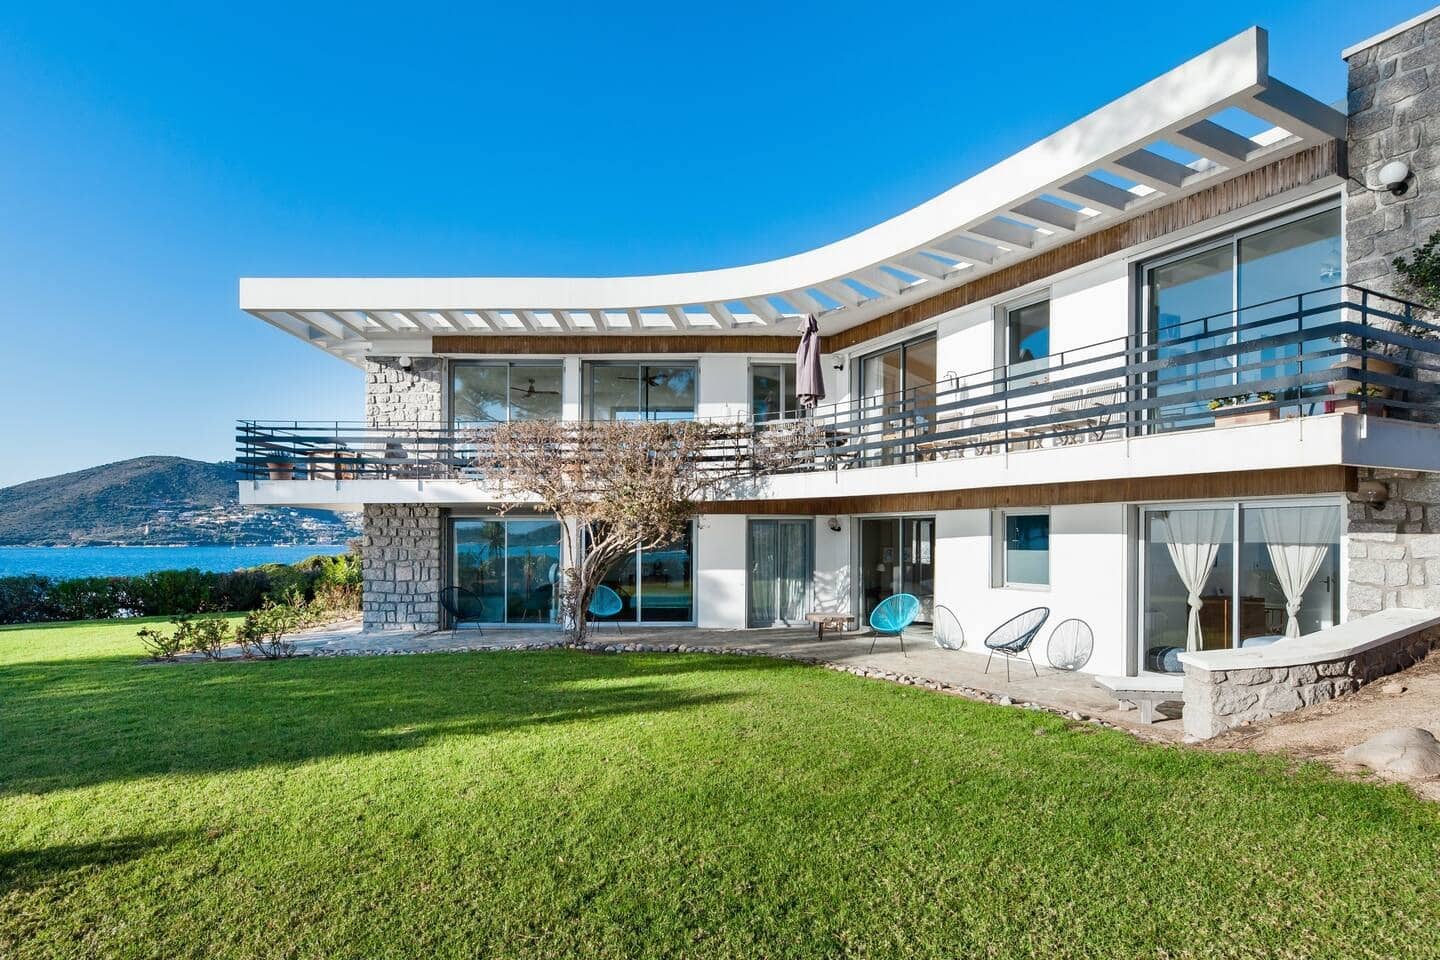 Eccezionale villa e accesso privato al mare, Airbnb Corsica